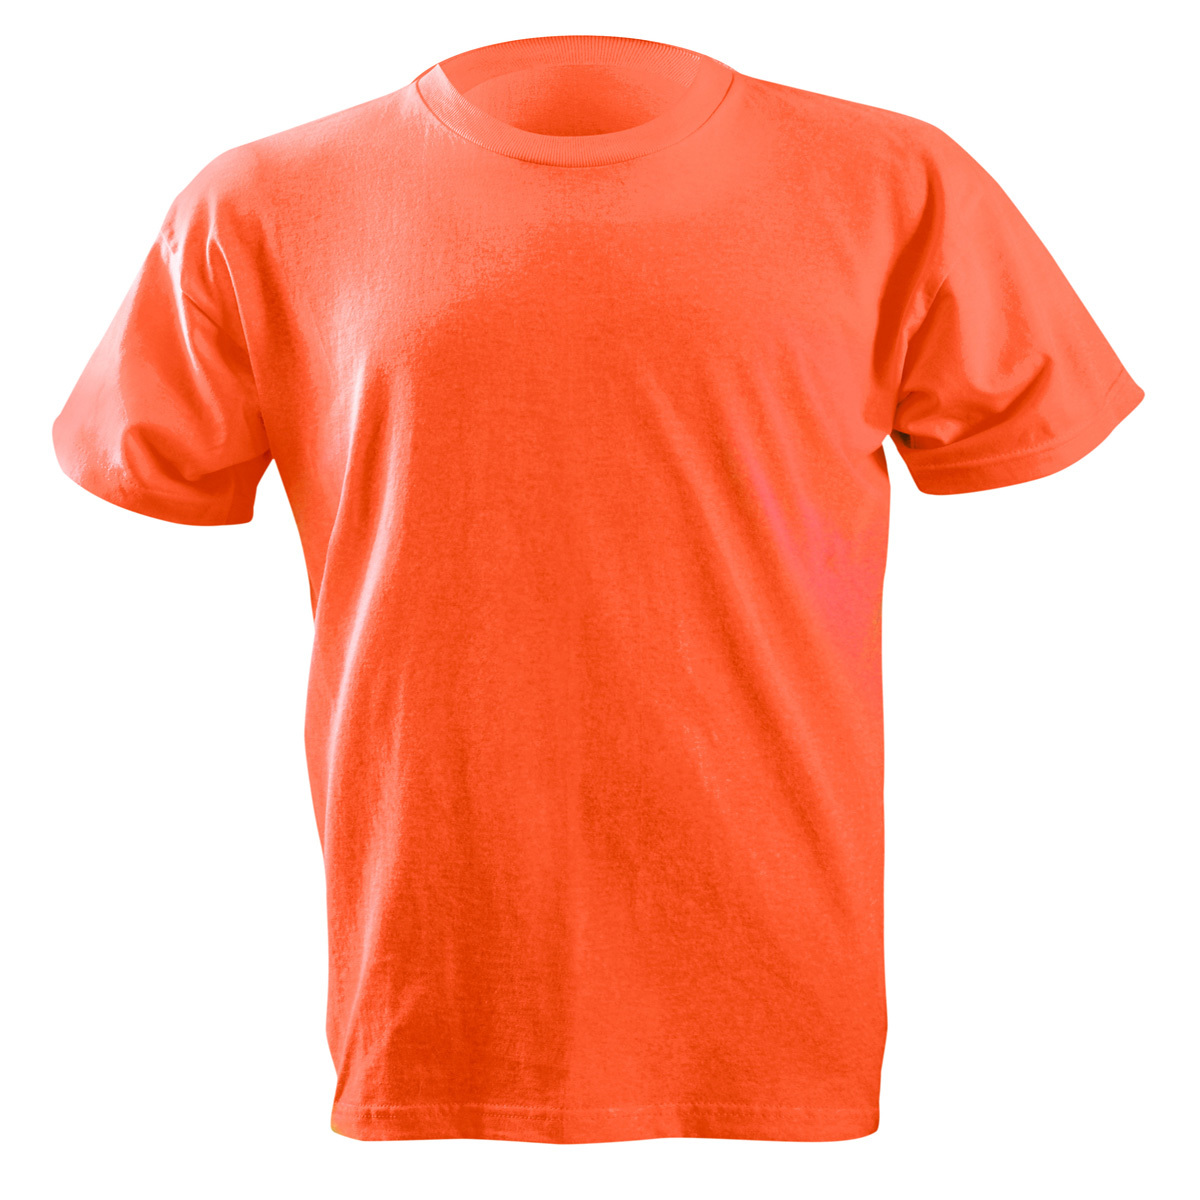 OccuNomix Size 2X Orange 6 Ounce Cotton T-Shirt